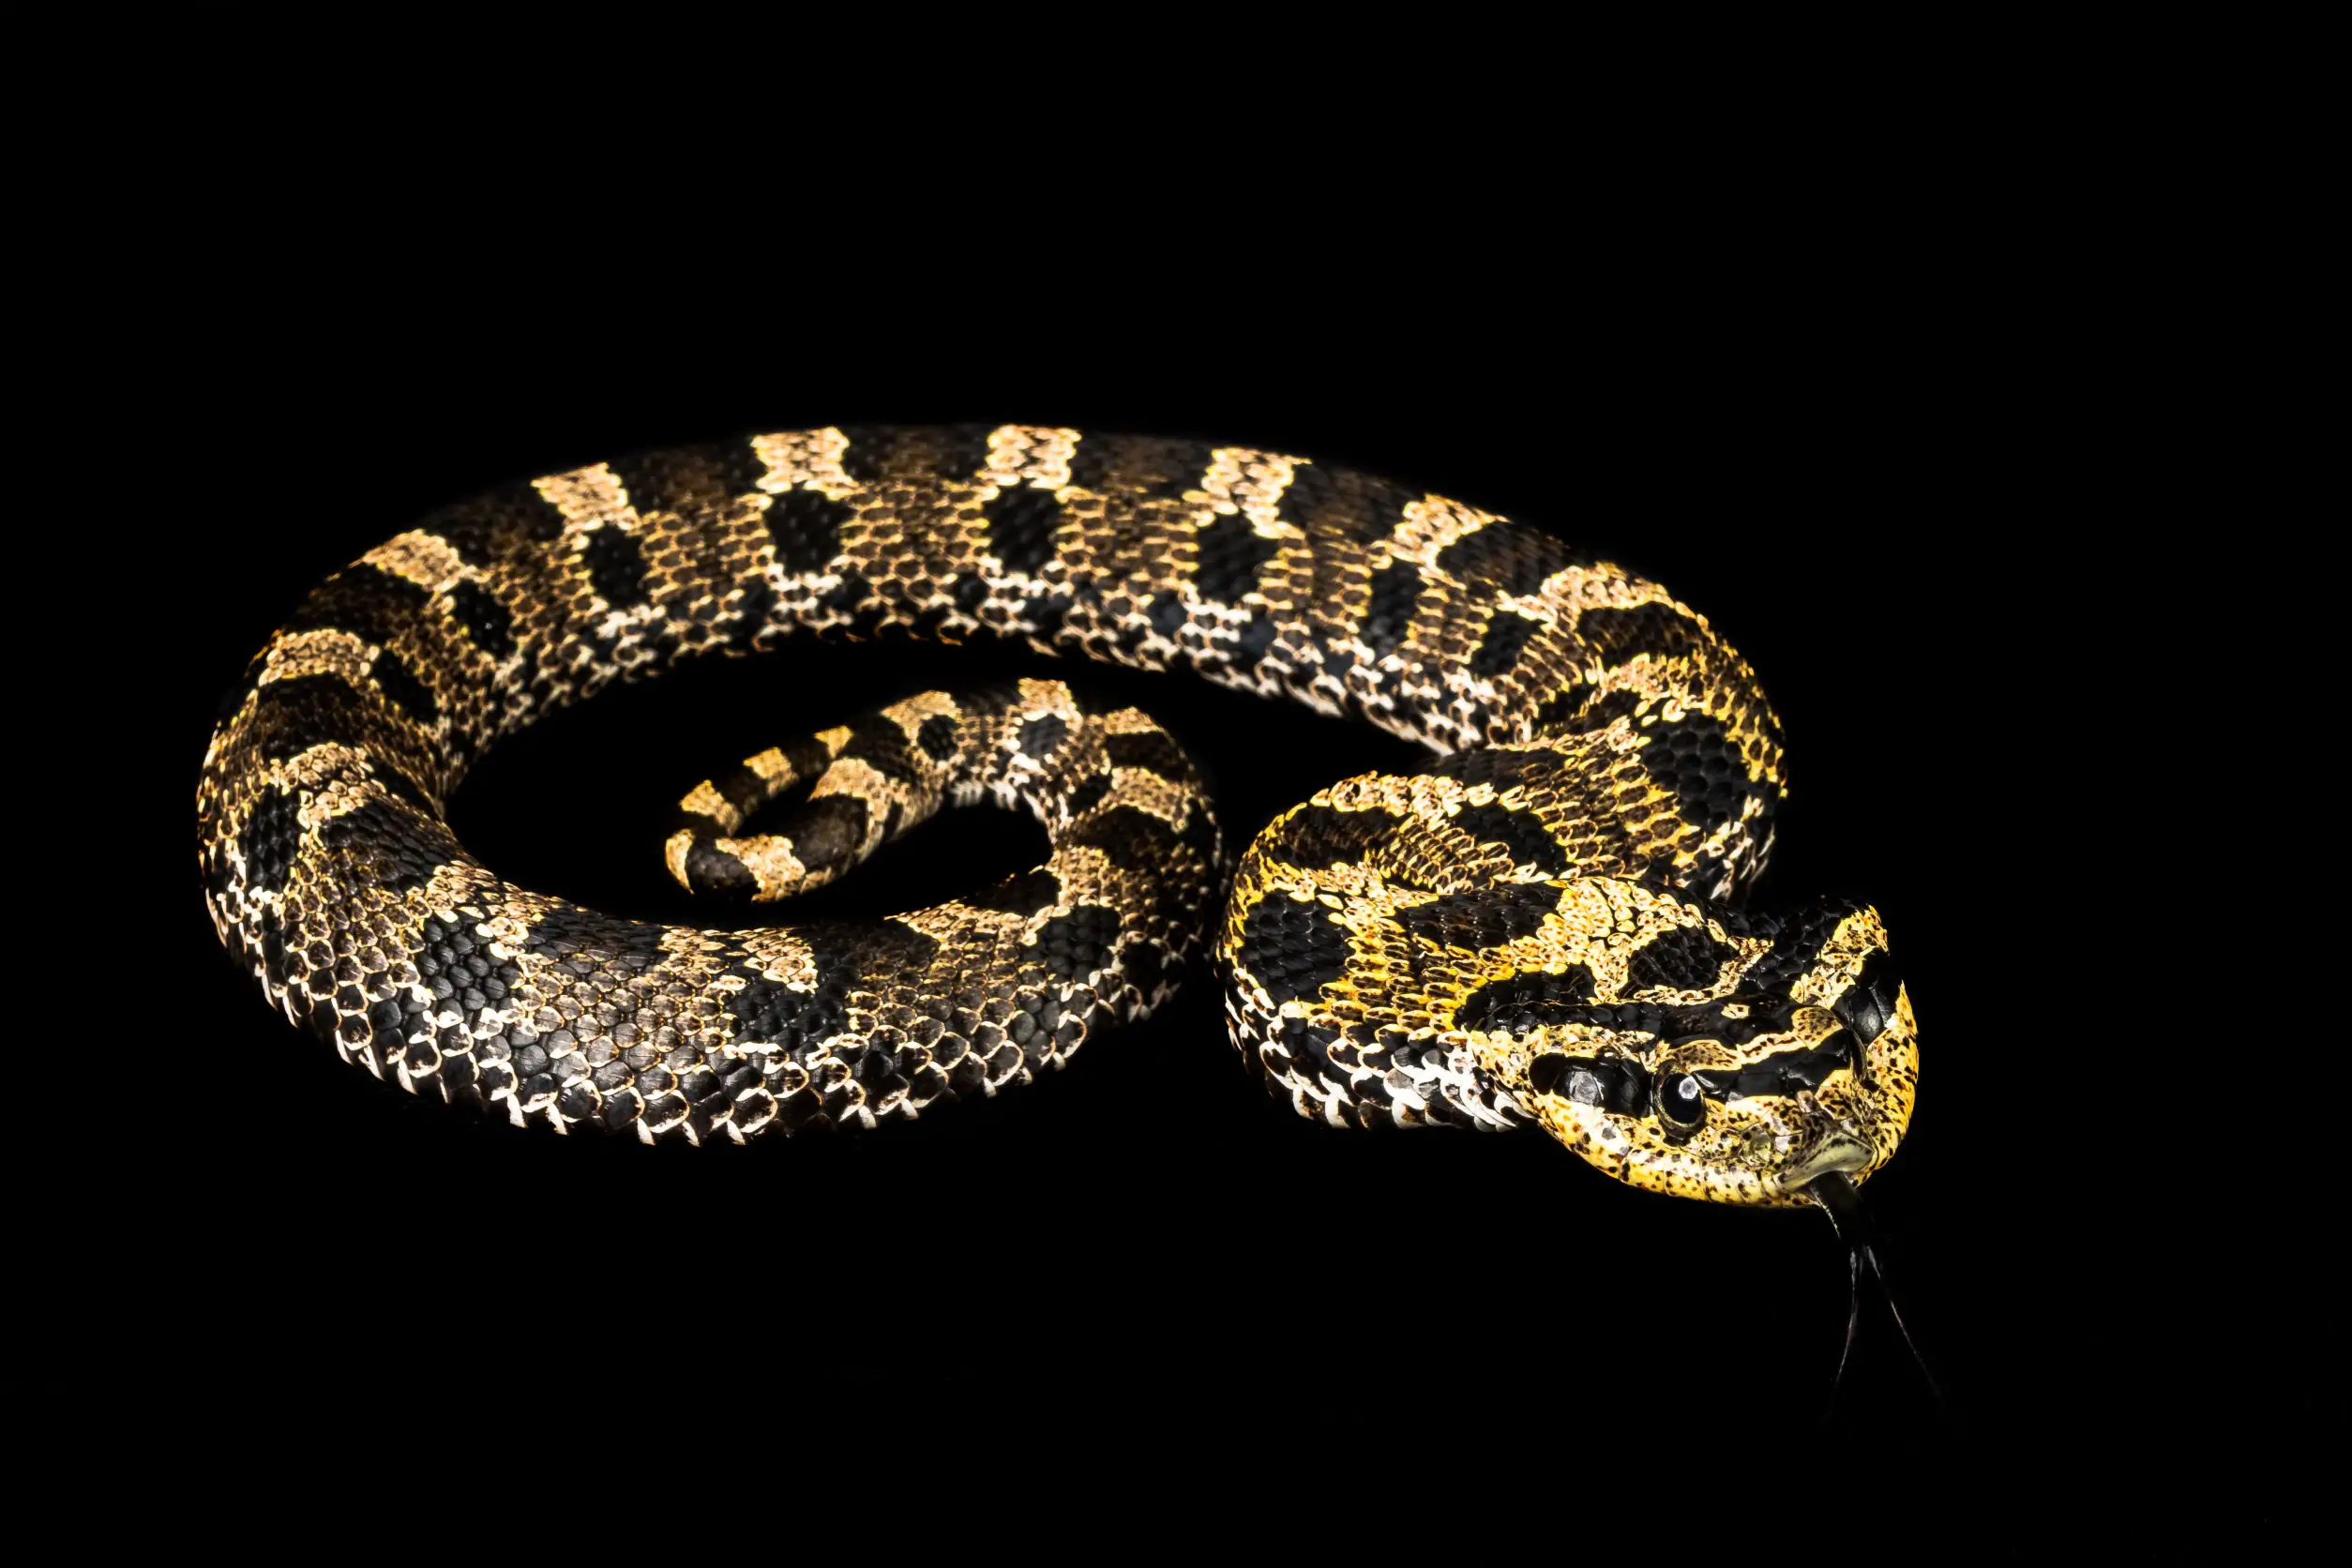 Eastern Hognose snake identification